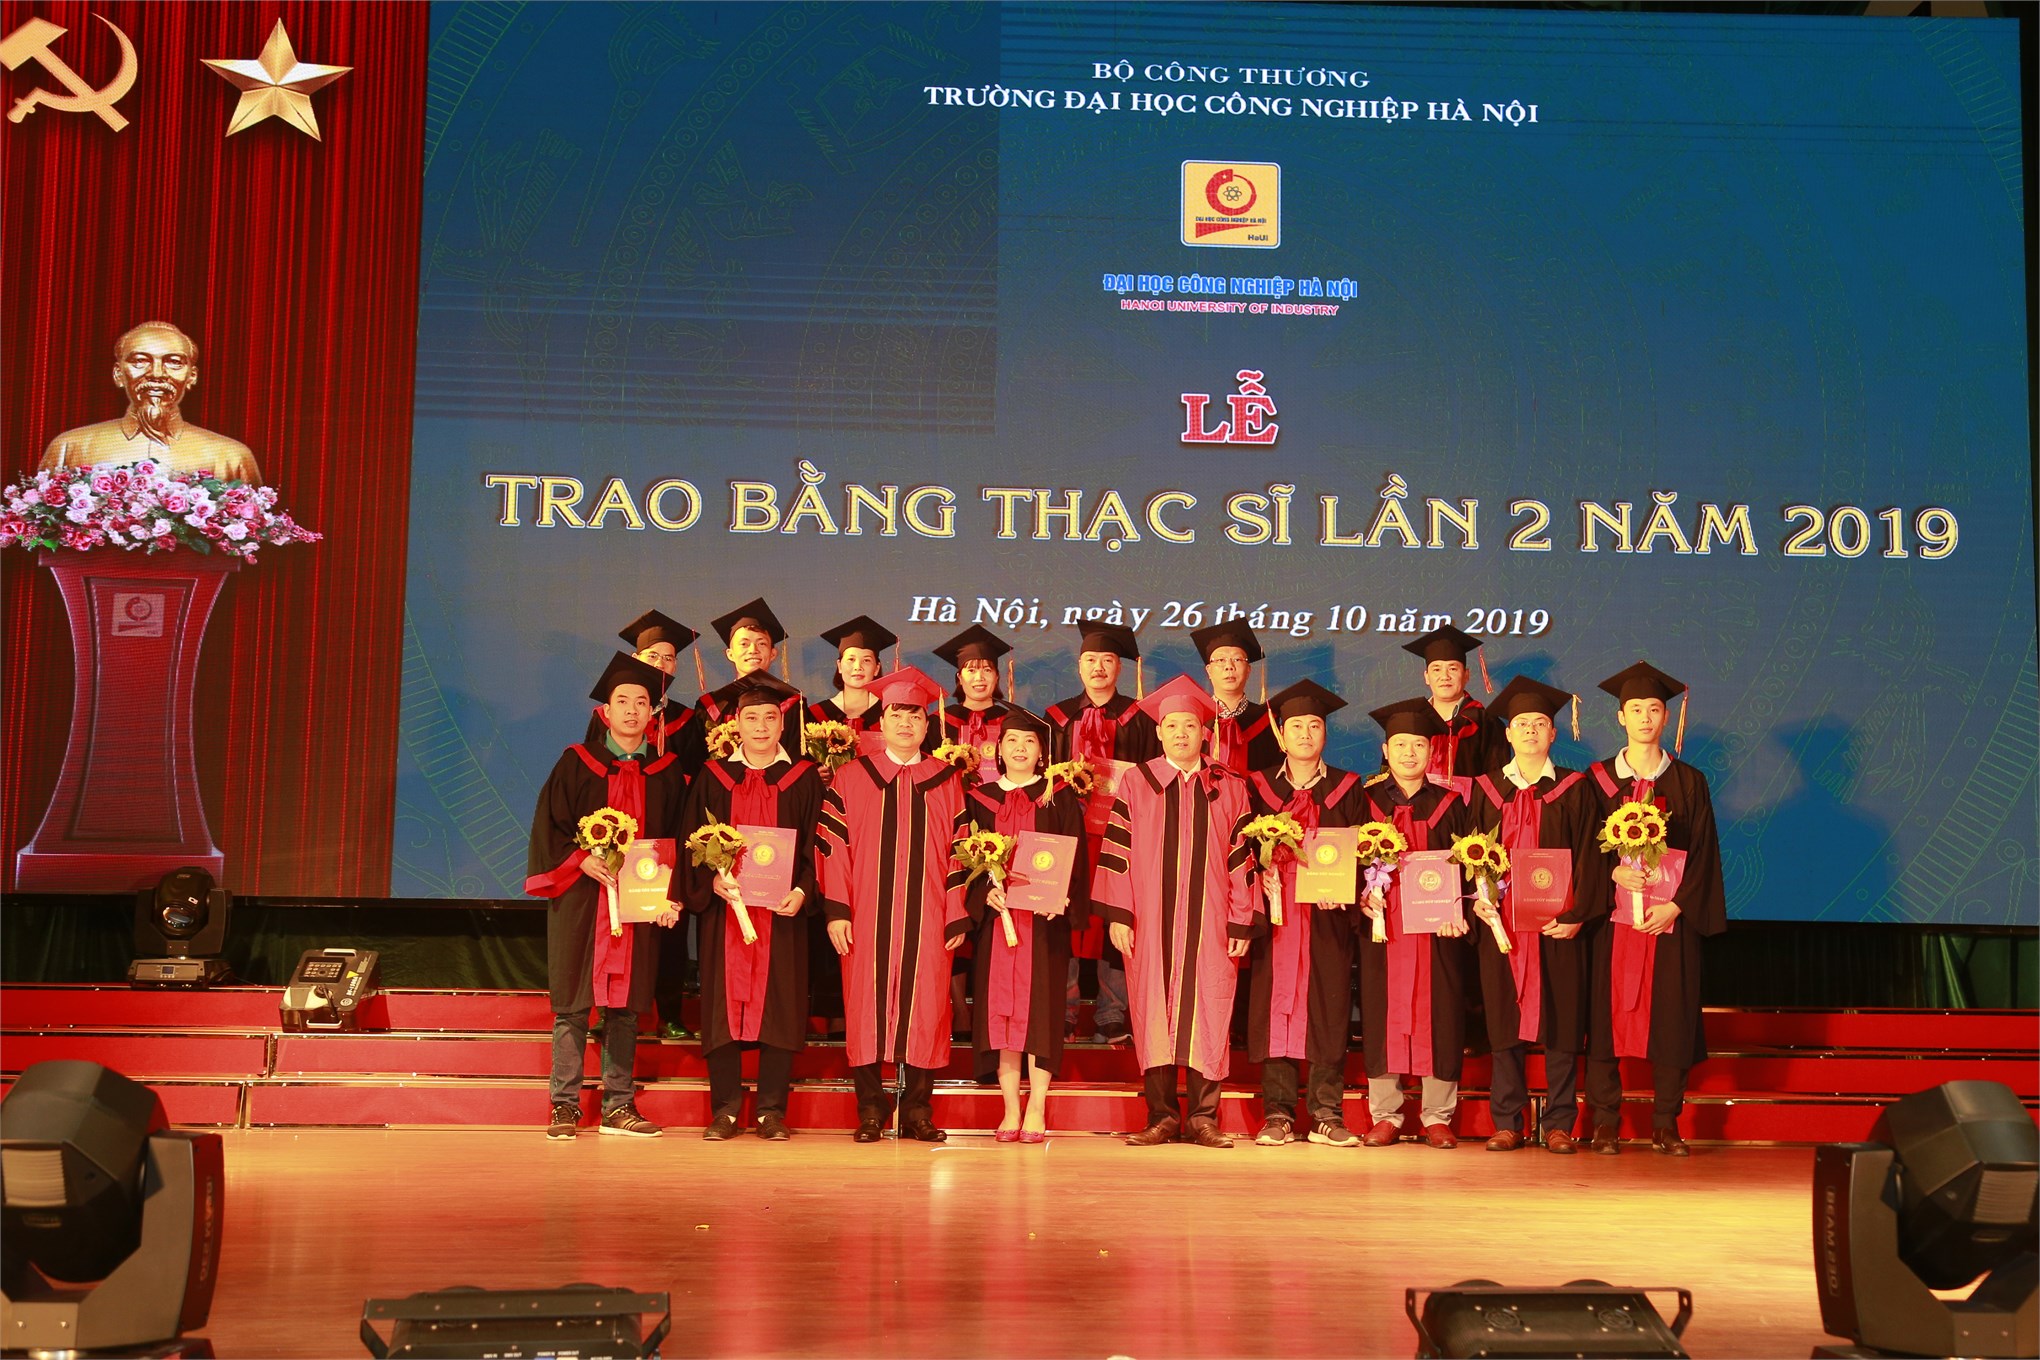 Lễ trao trao bằng thạc sĩ cho 127 tân thạc sĩ cao học khóa 7 đợt 2 (2017-2019).